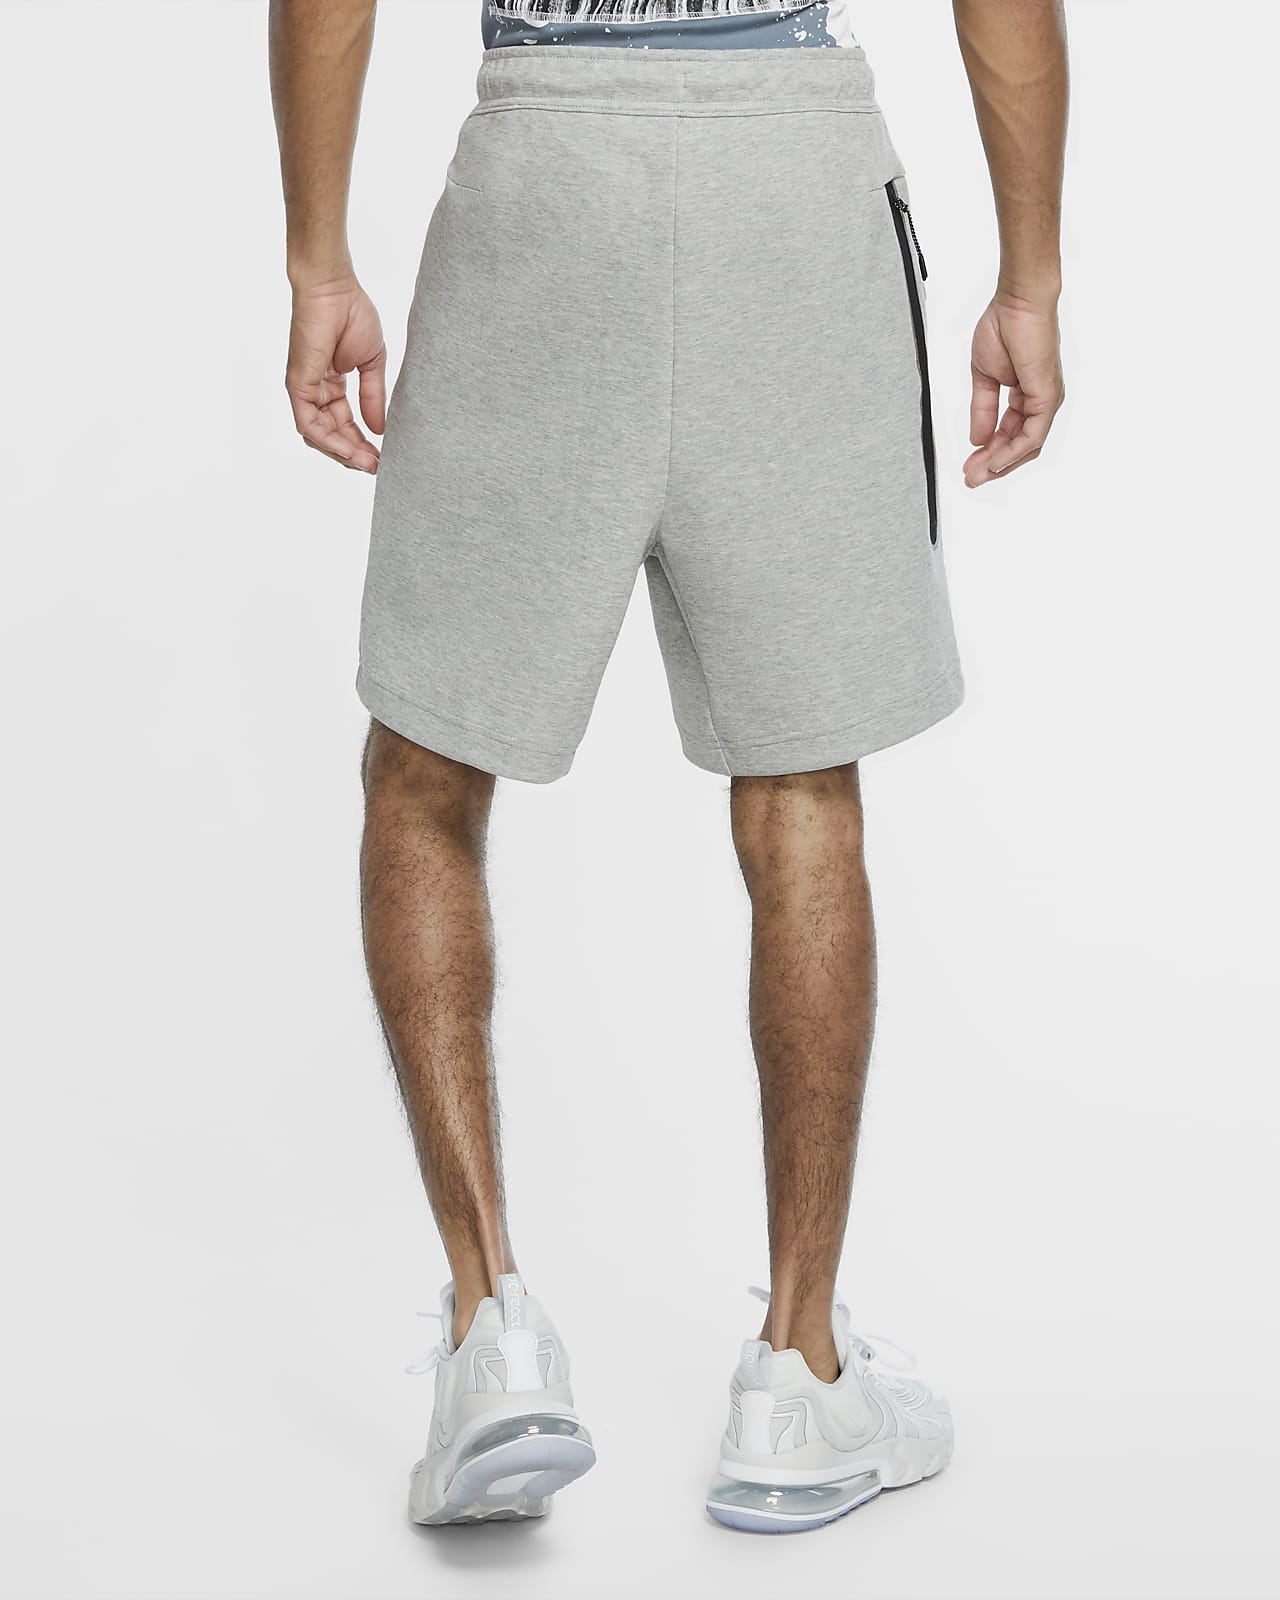 nike grey mens shorts